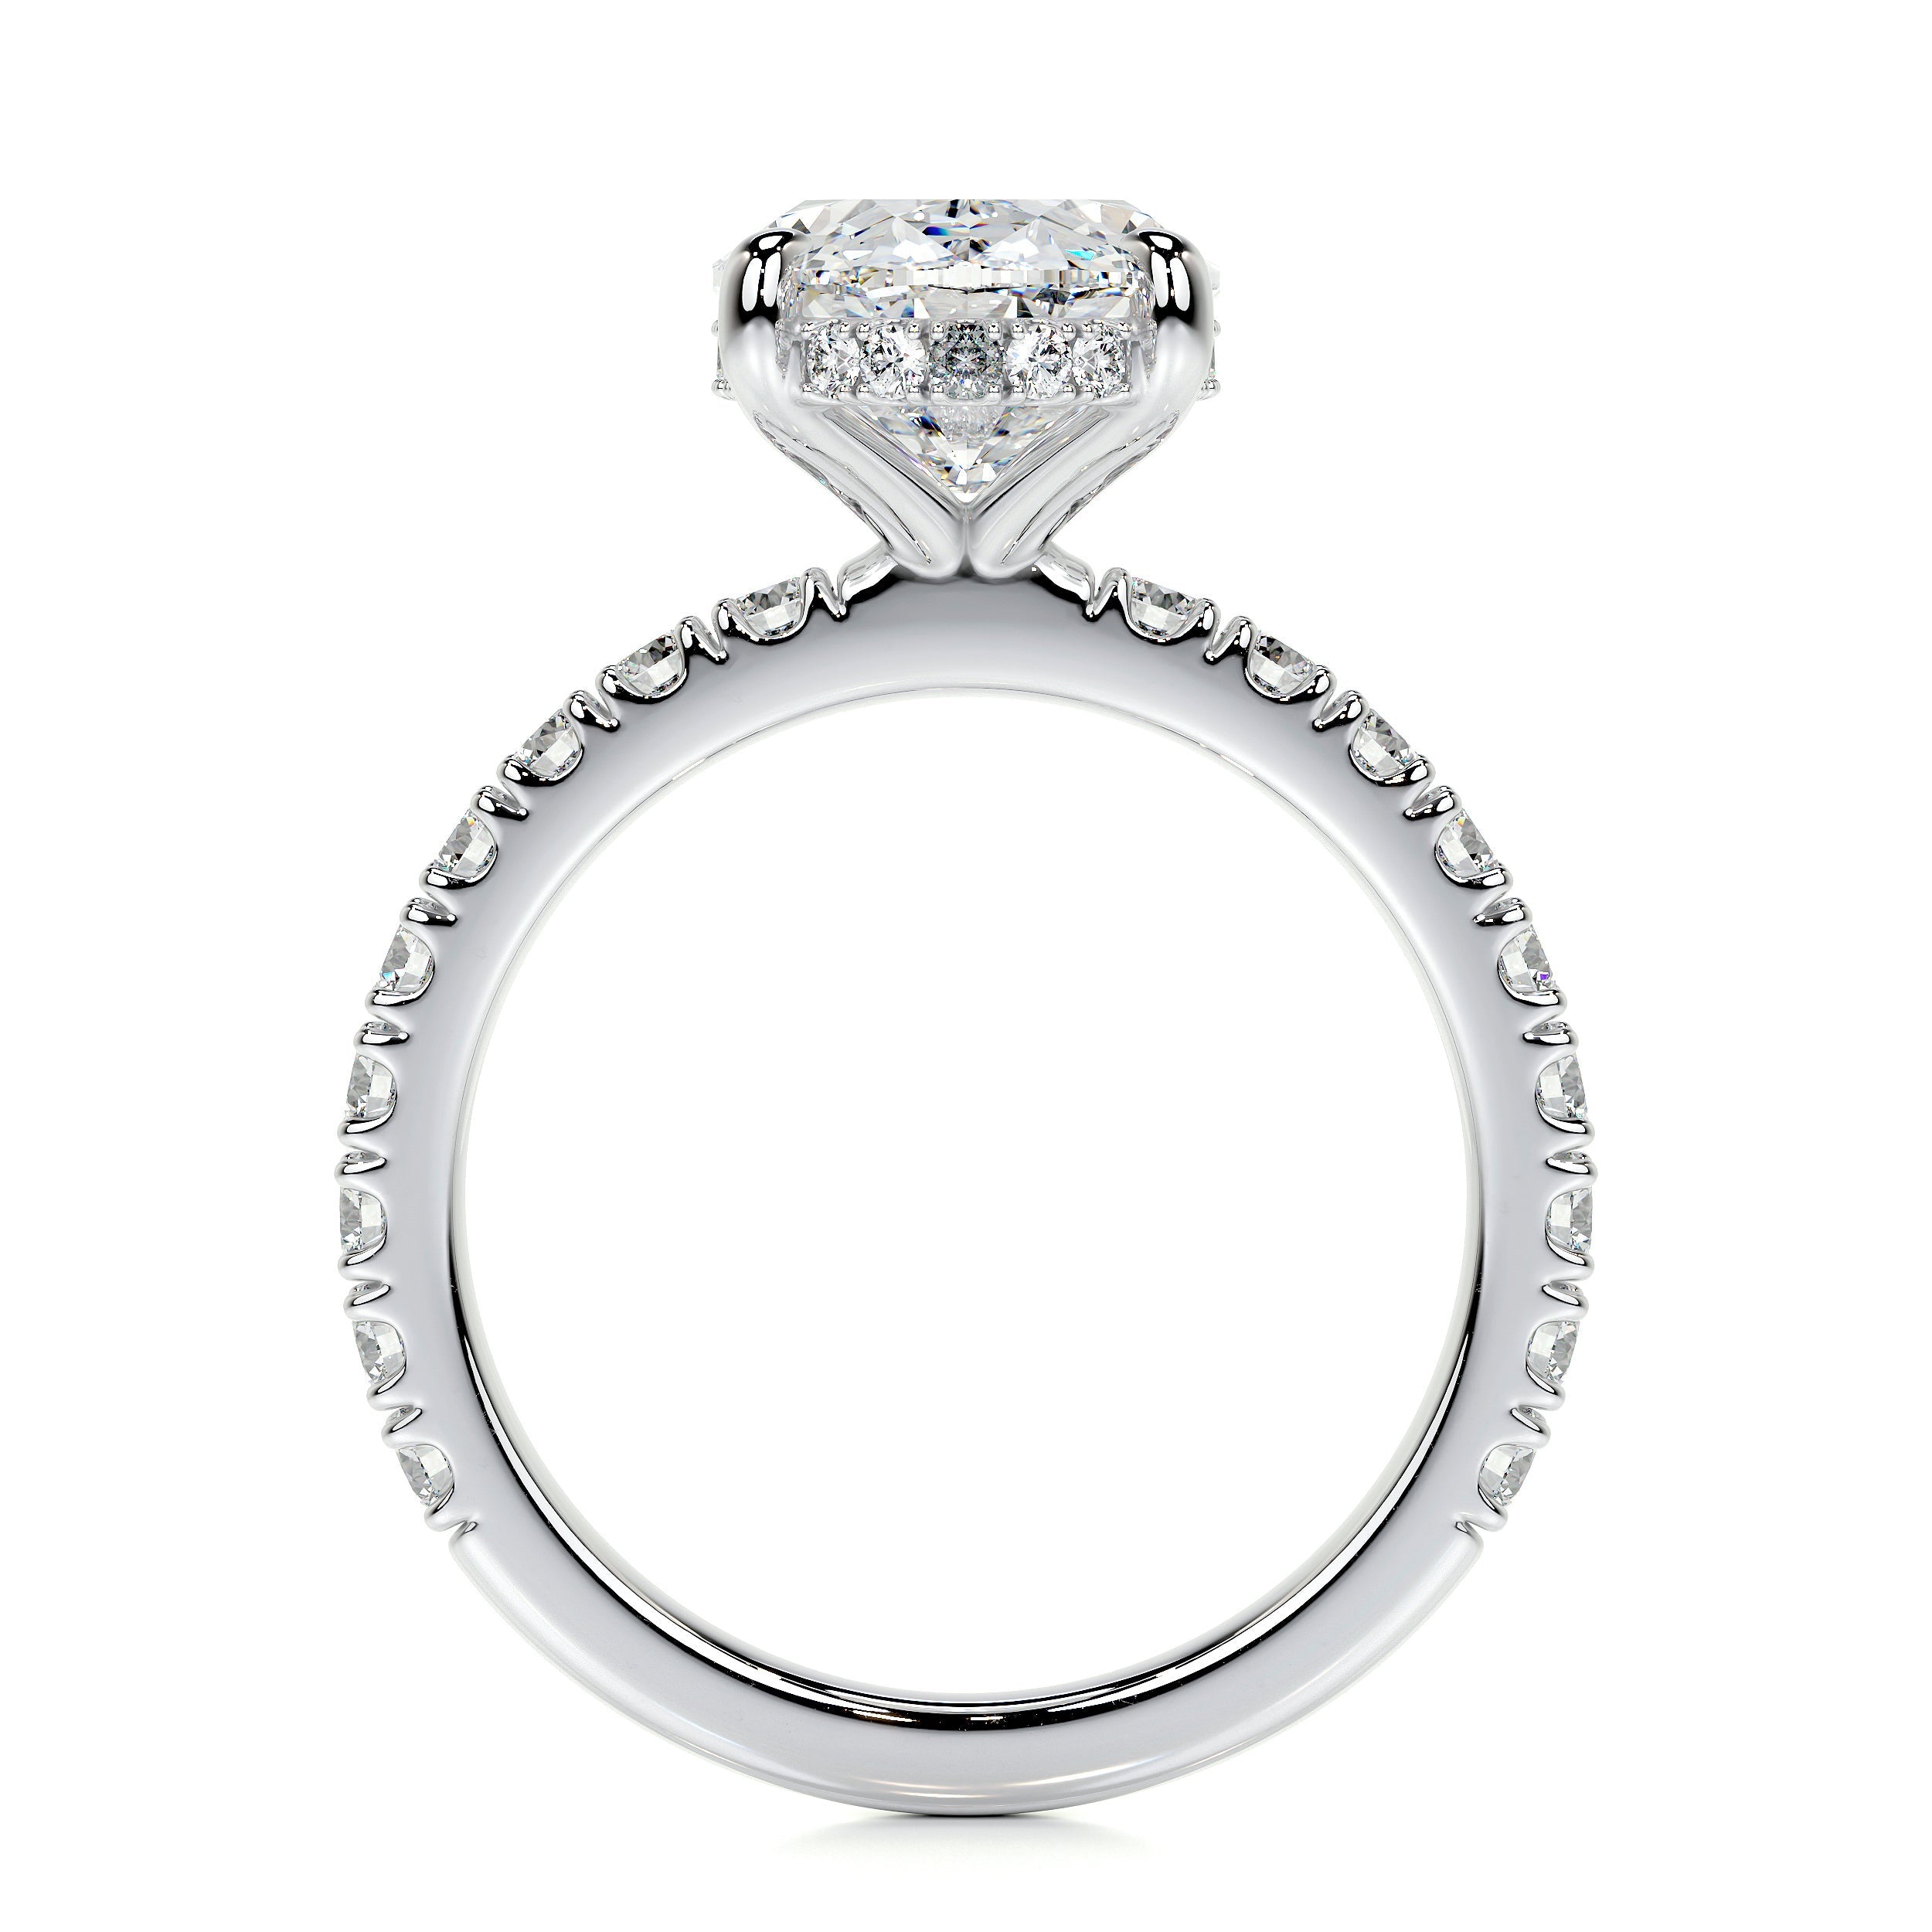 Lucy Lab Grown Diamond Ring   (3.5 Carat) -18K White Gold